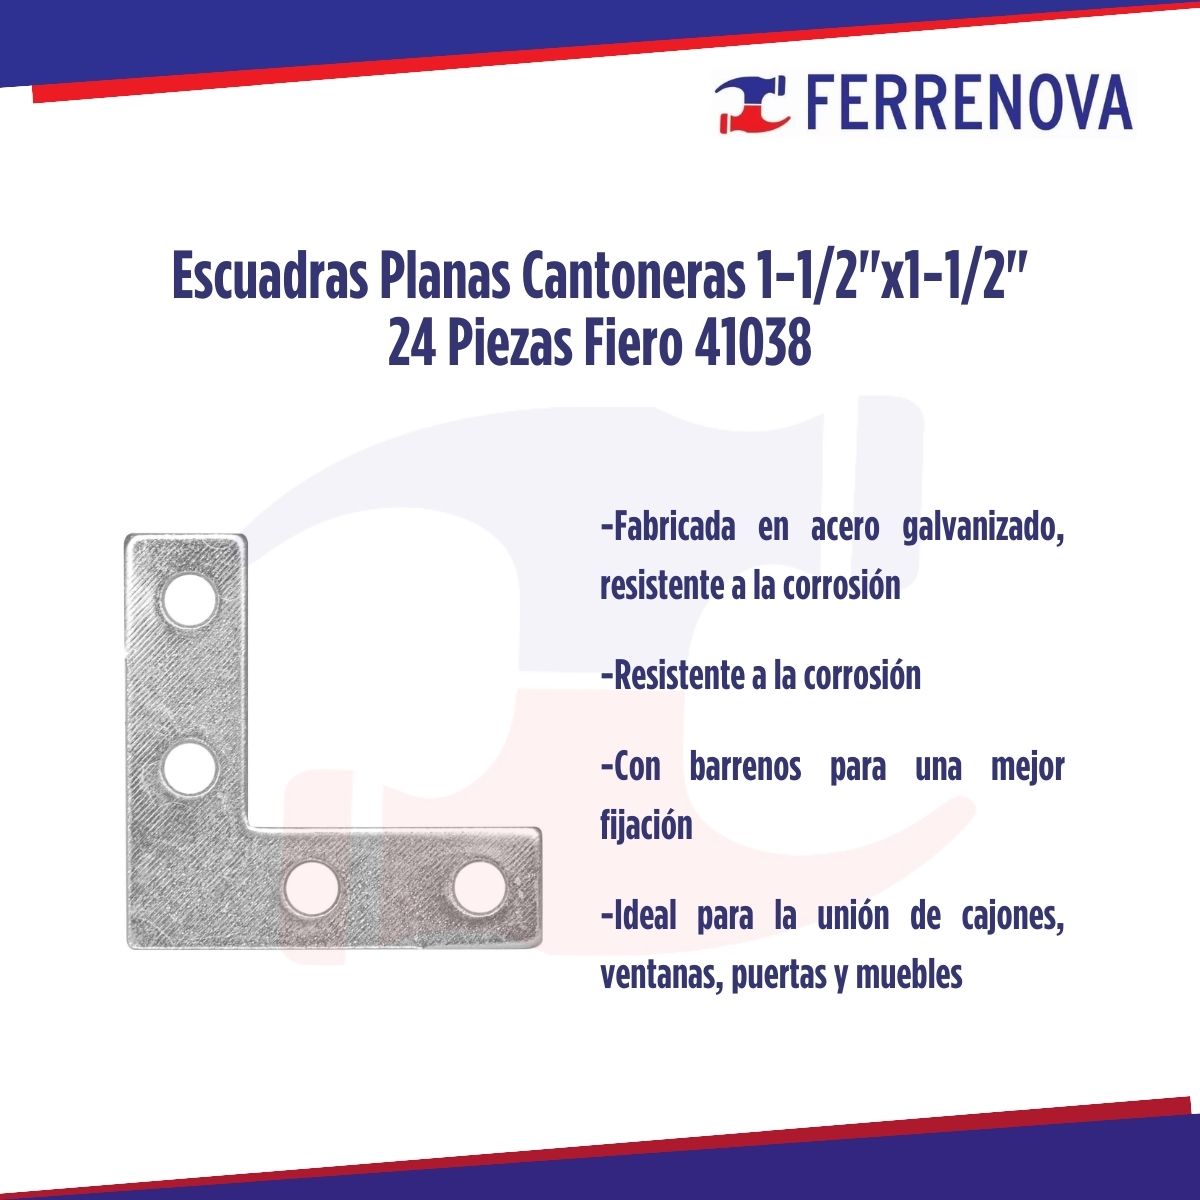 Escuadras Planas Cantoneras 1-1/2"x1-1/2" 24 Piezas Fiero 41038